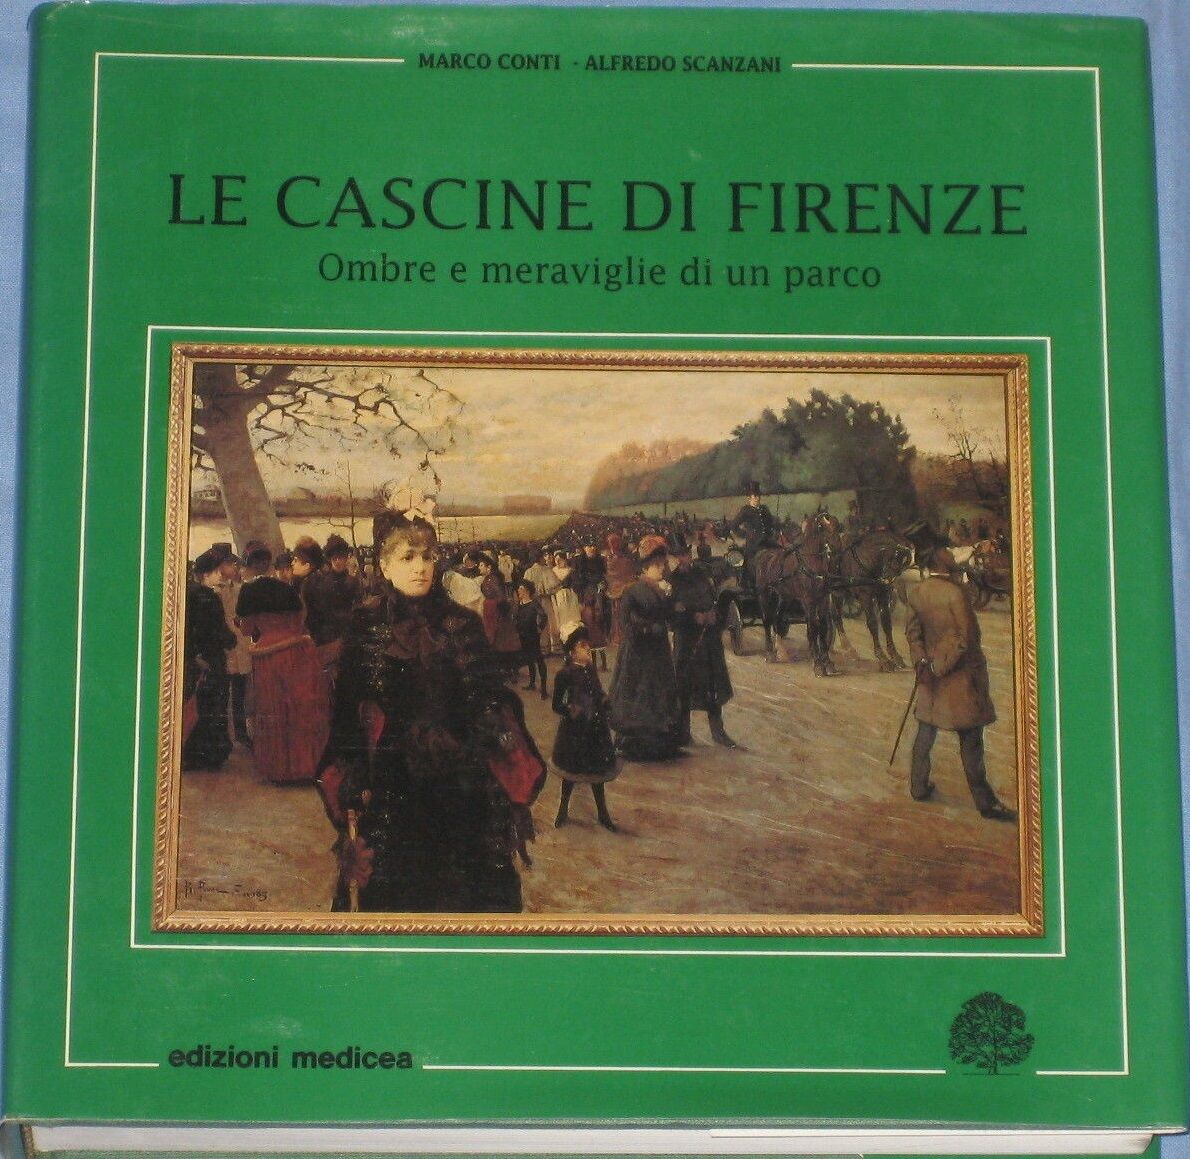 LE CASCINE DI FIRENZE. Ombre e meraviglie di un parco - Conti - Scanzani, 1991